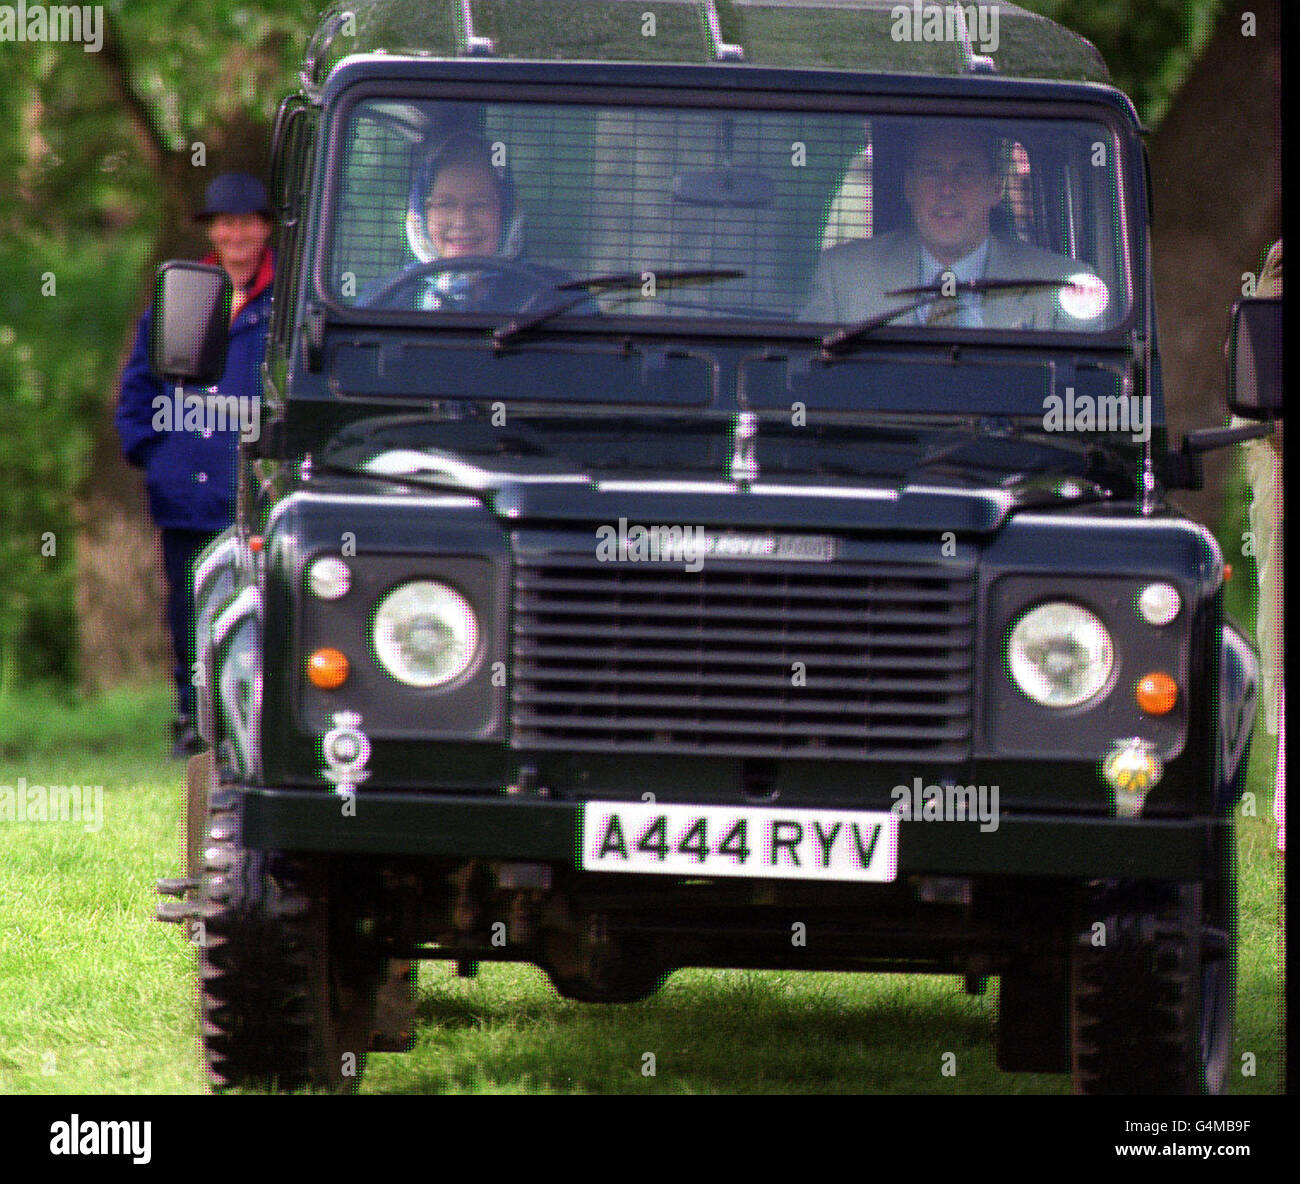 La Reine conduisant un Land Rover au Royal Windsor Horse Show.* 19/12/01 photos d'une nouvelle limousine d'État Bentley spécialement construite, que la reine utilisera pour les occasions d'État, a été libéré.La voiture a été créée pour marquer le Jubilé d'or de la Reine et sera présentée à elle en 2002. Banque D'Images